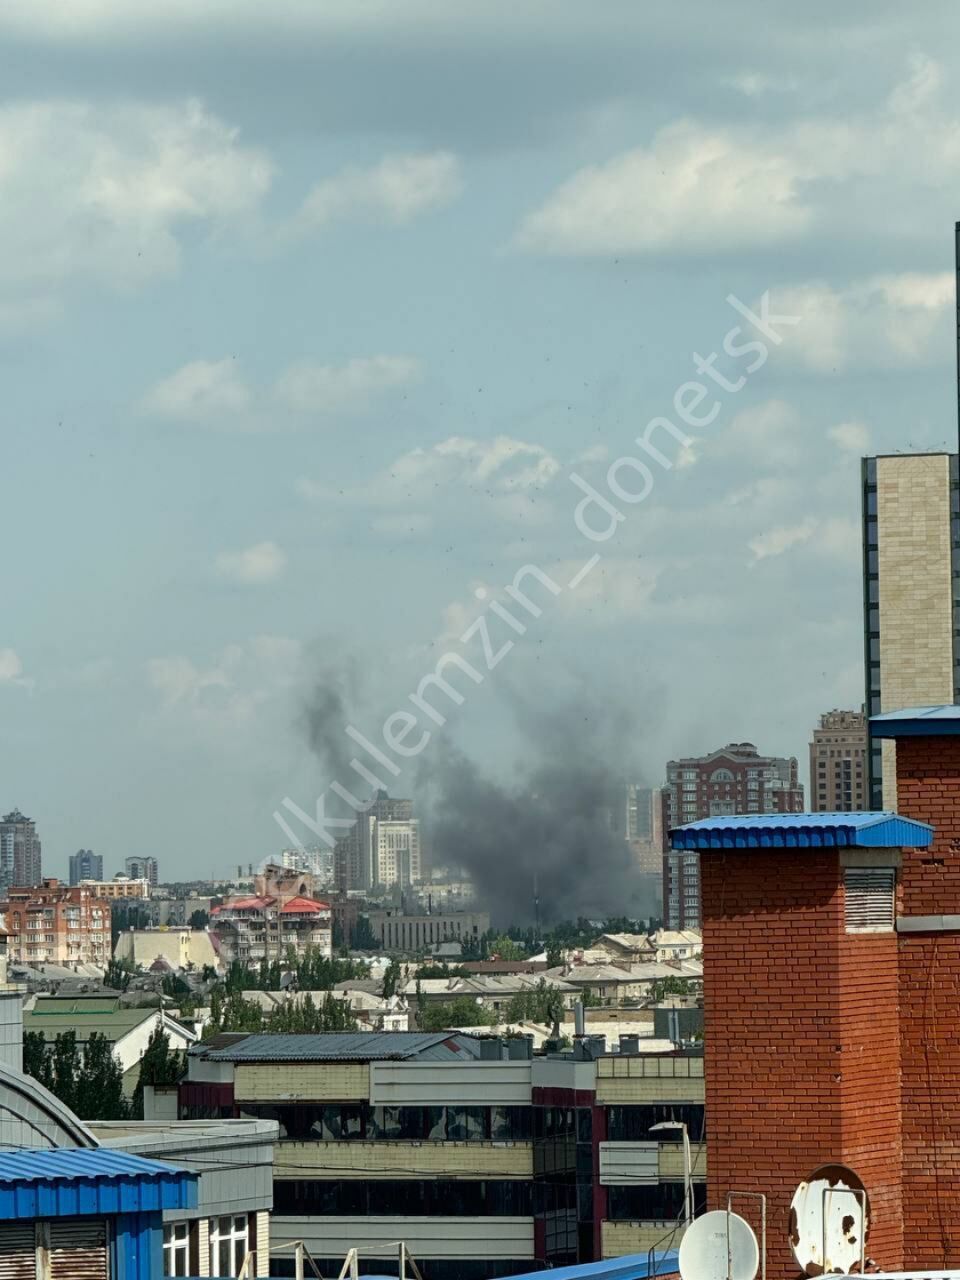 В оккупированном Донецке прогремели взрывы, поднялся дым. Фото